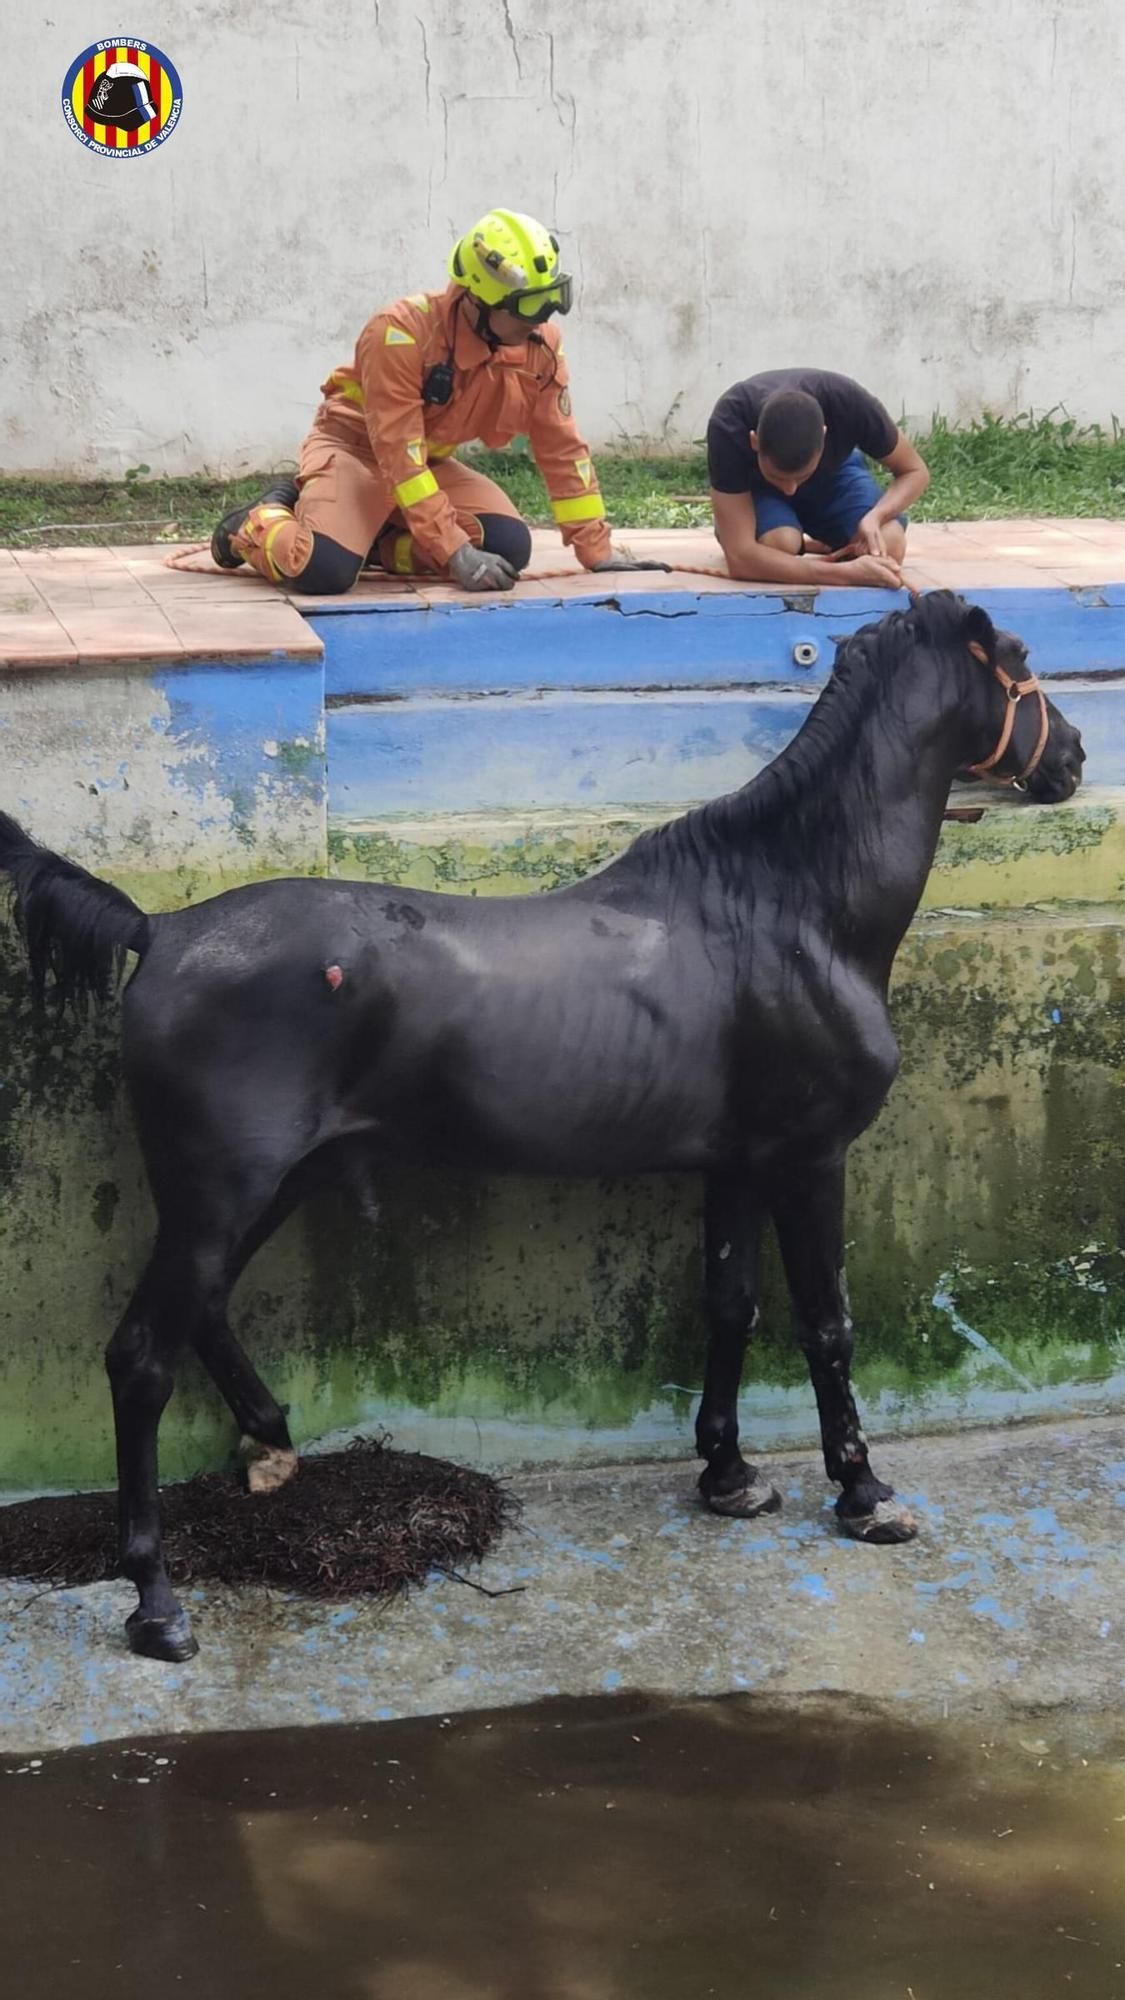 Los bomberos rescatan a un caballo que cayó en una piscina en Bétera